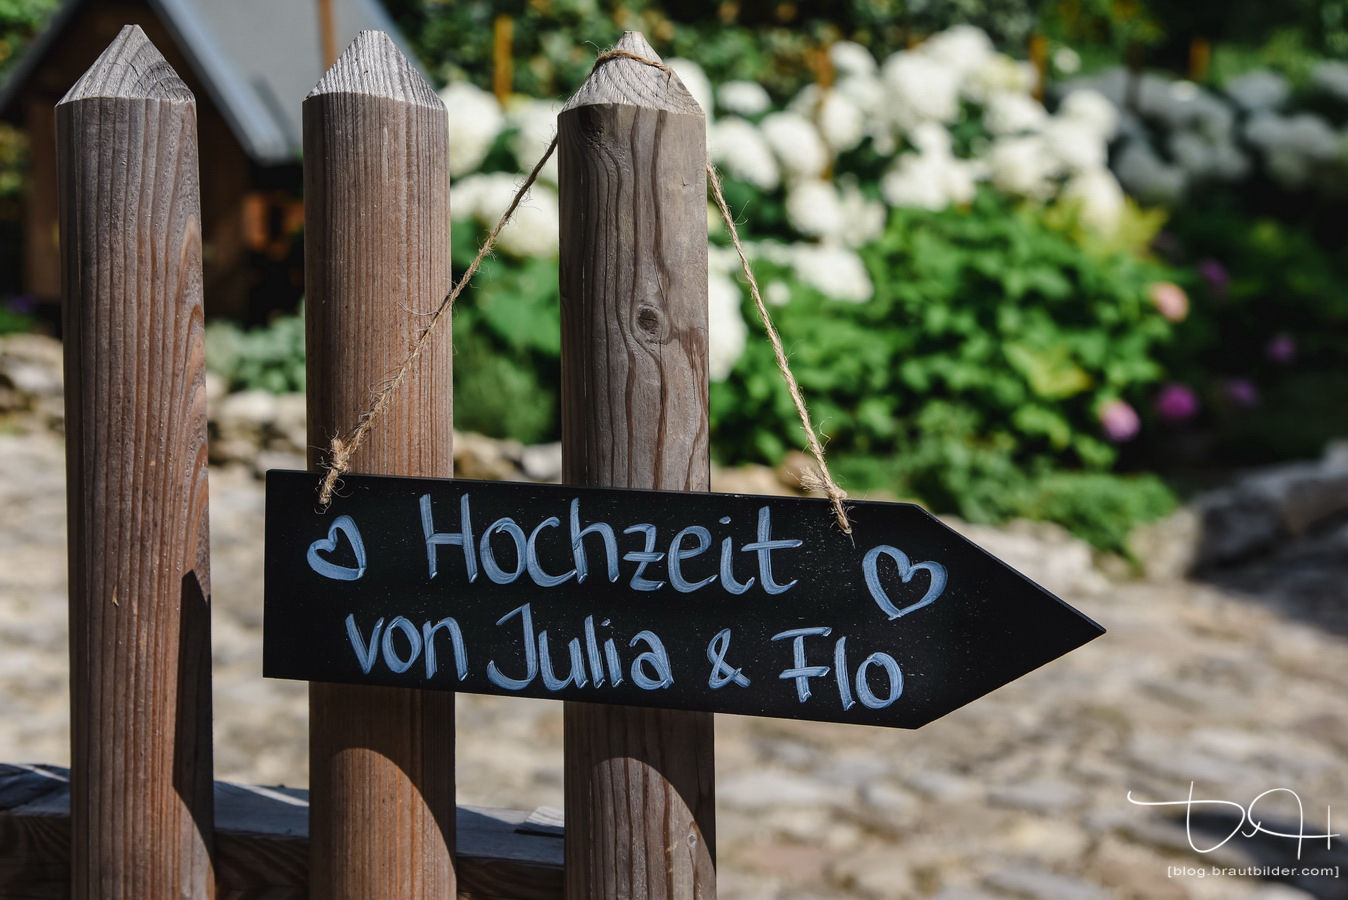 Der Hochzeitsfotograf im Laeidlhuf bei Hersbruck.